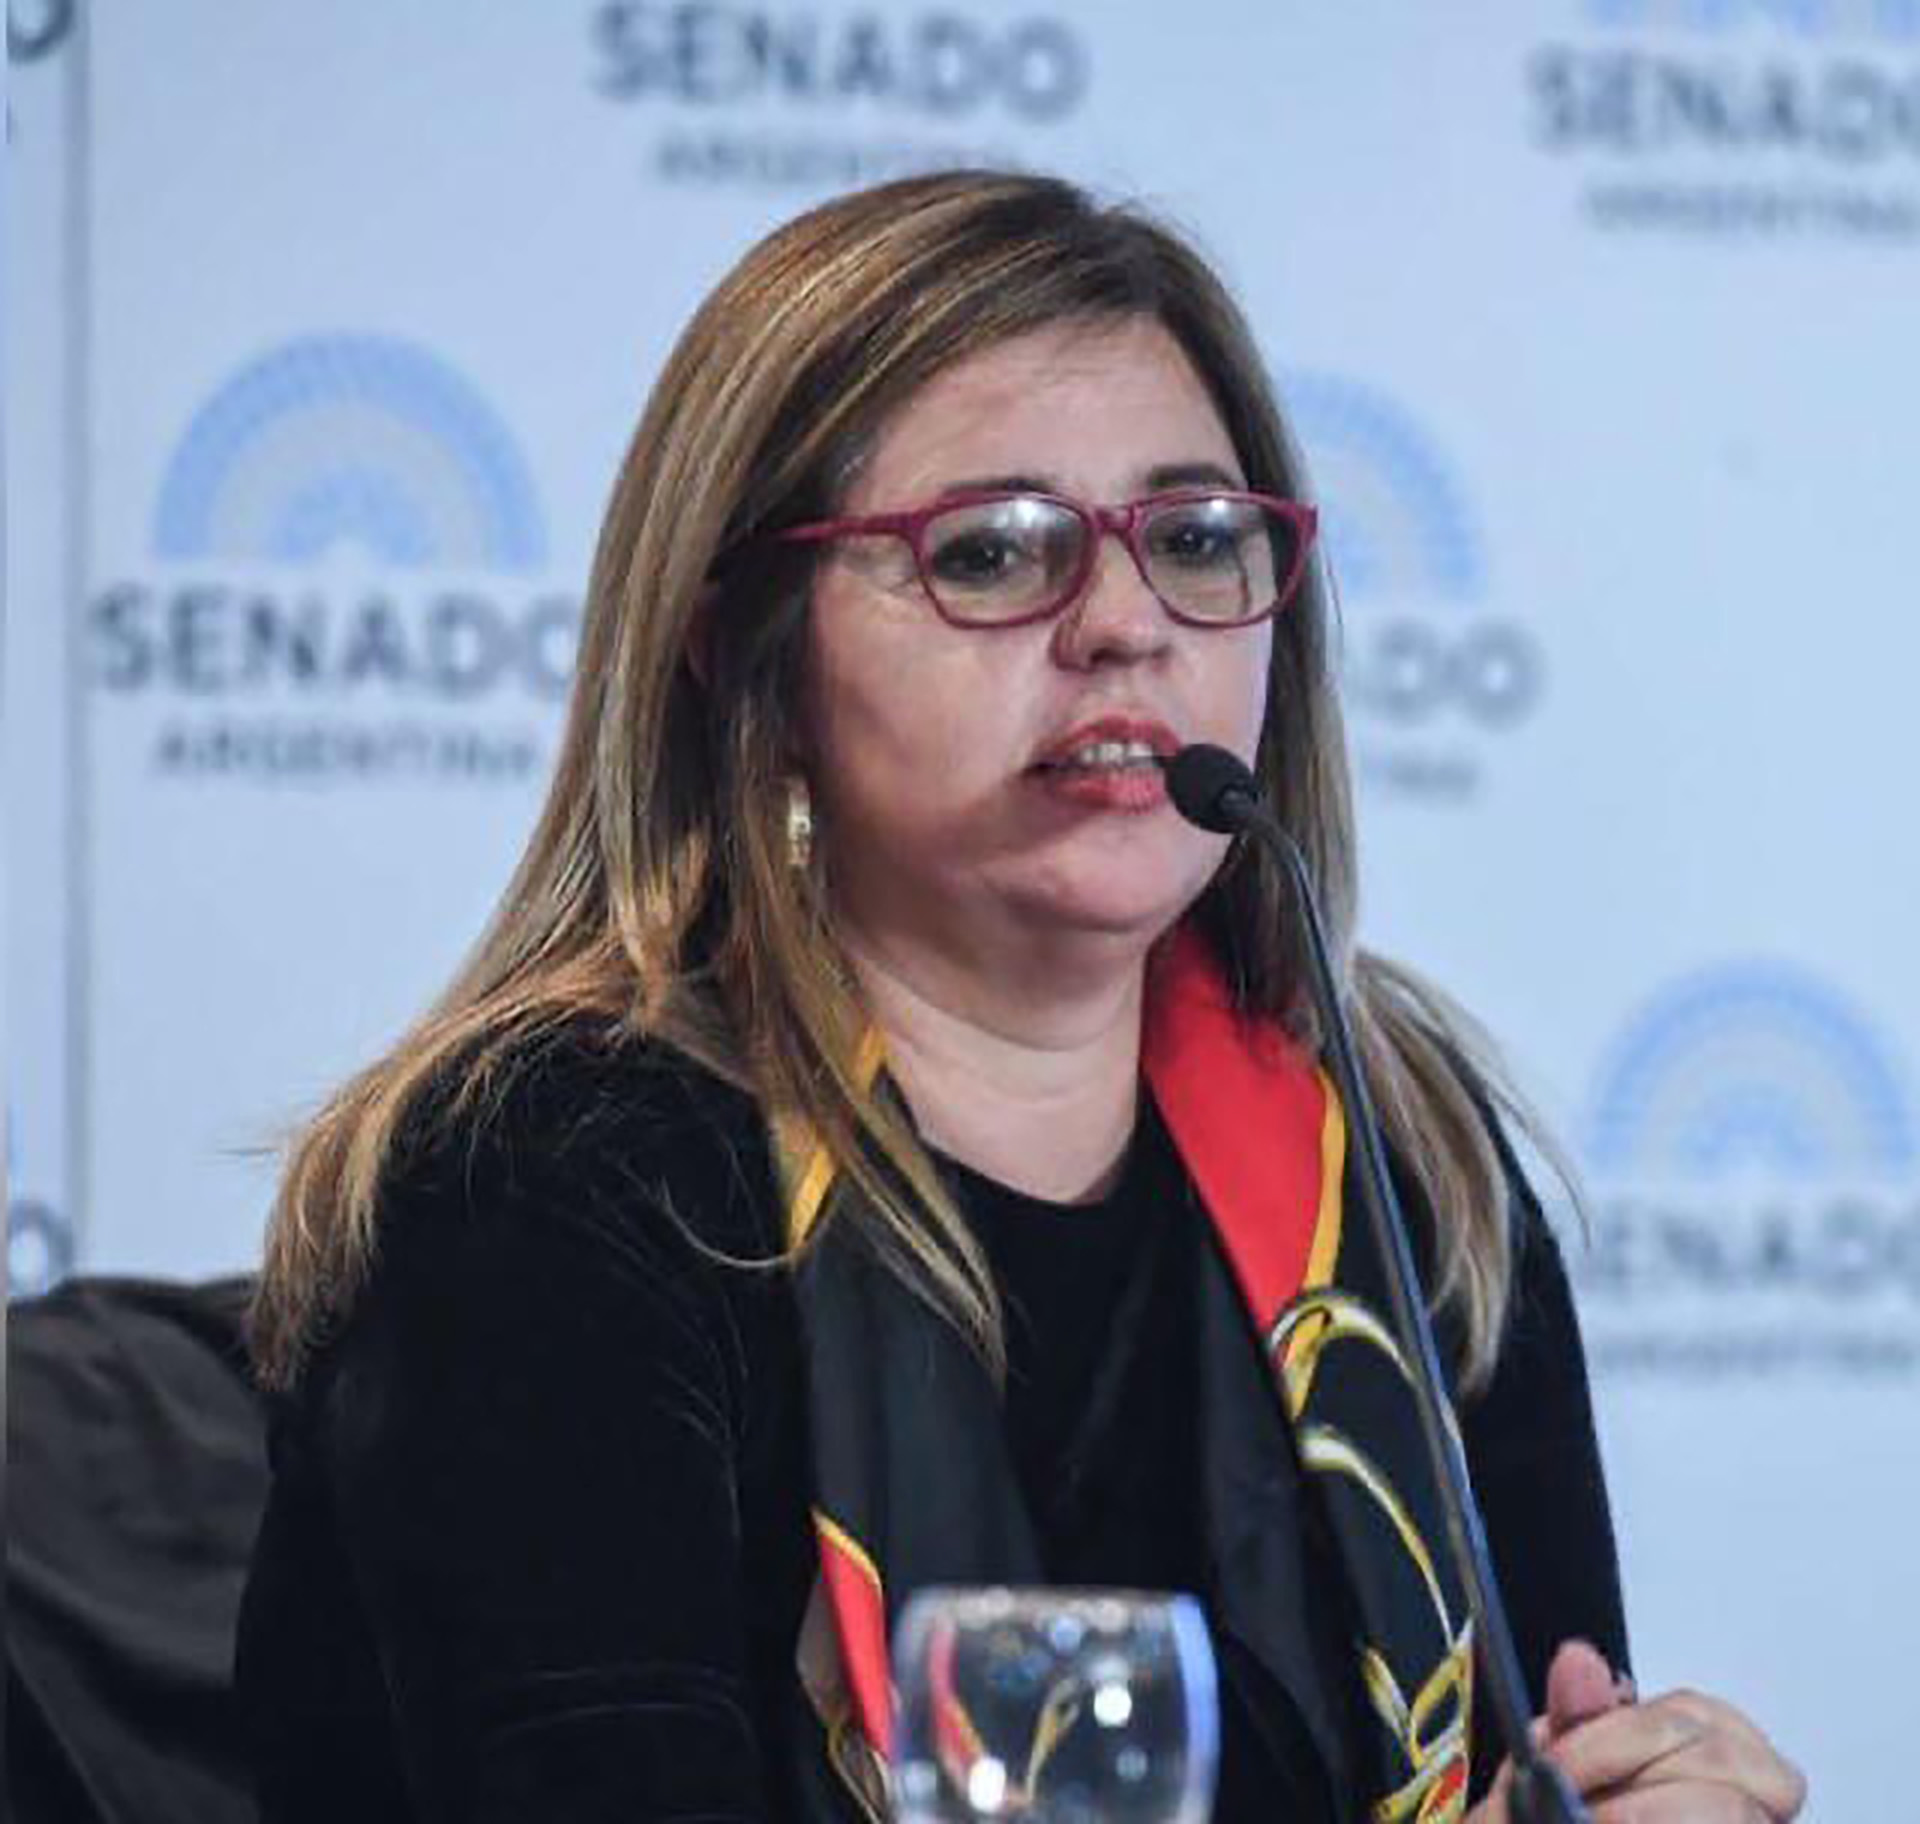 Sonia Almada, es psicoanalista (M.N. 22366), especialista en Infancia y adolescencia y presidenta de Aralma asociación civil